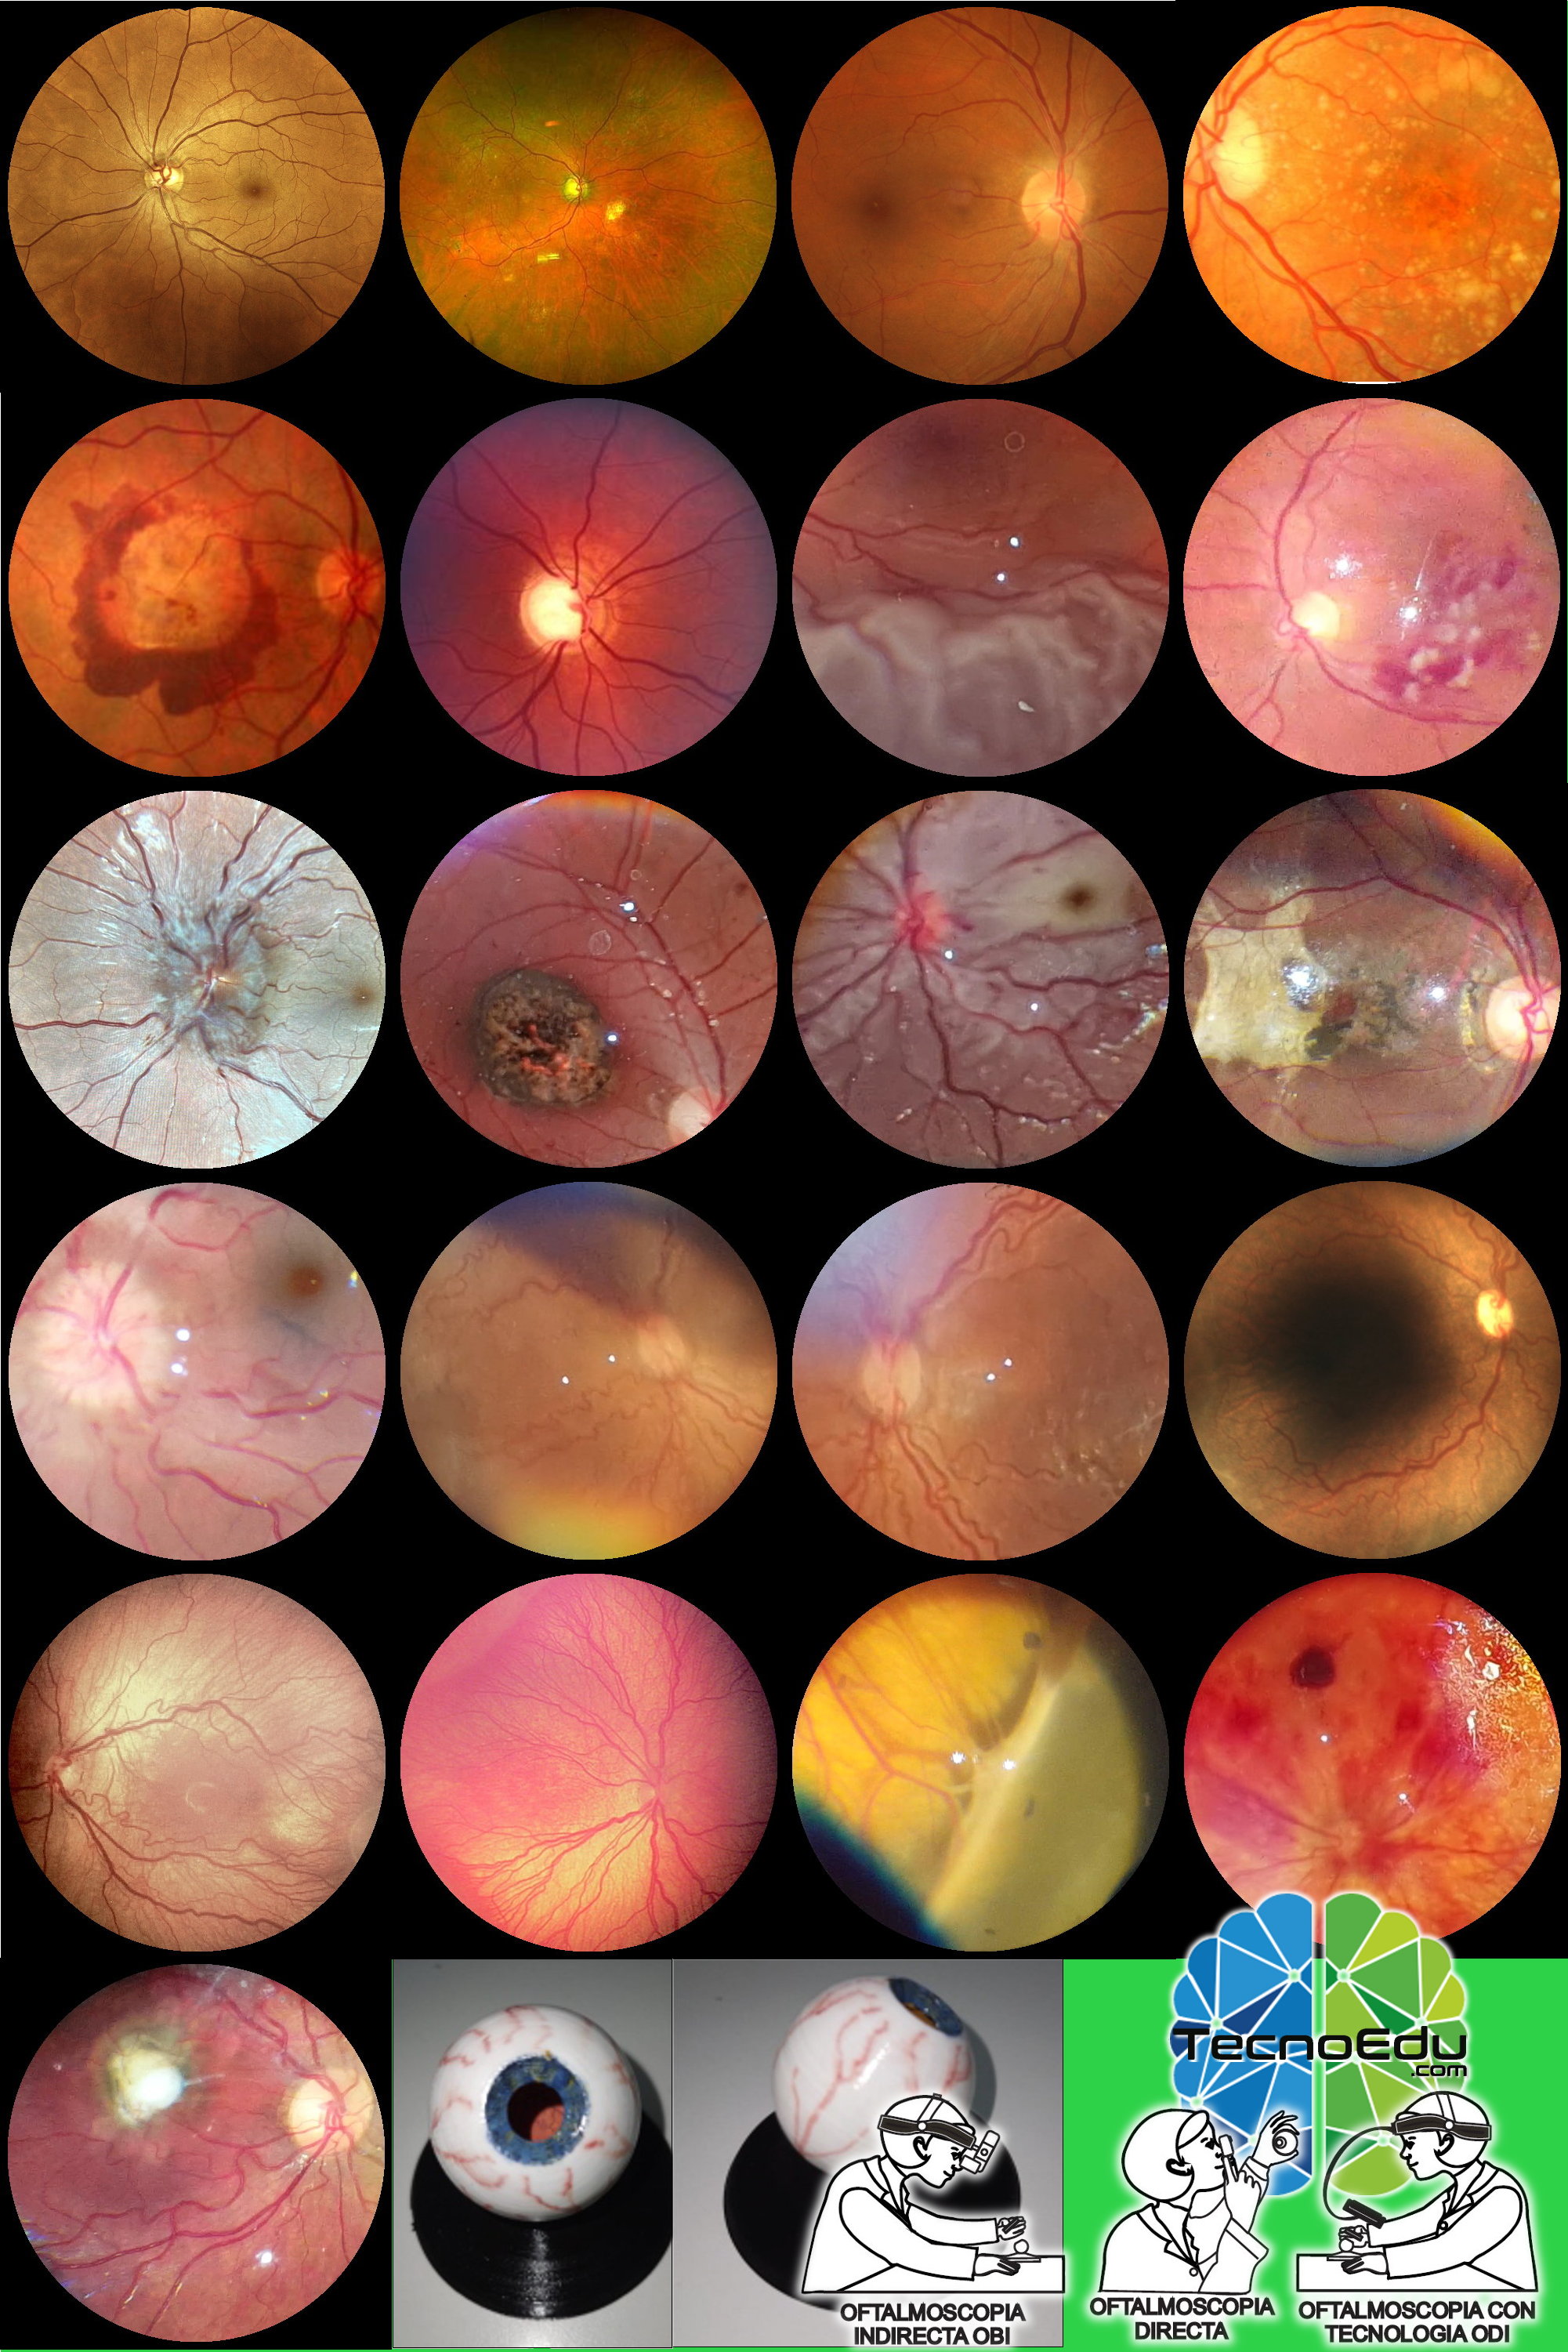 Colección de 21 maquetas para practicar exámenes oftalmológicos de fondo de ojo (FO) Oftalmo kit FO